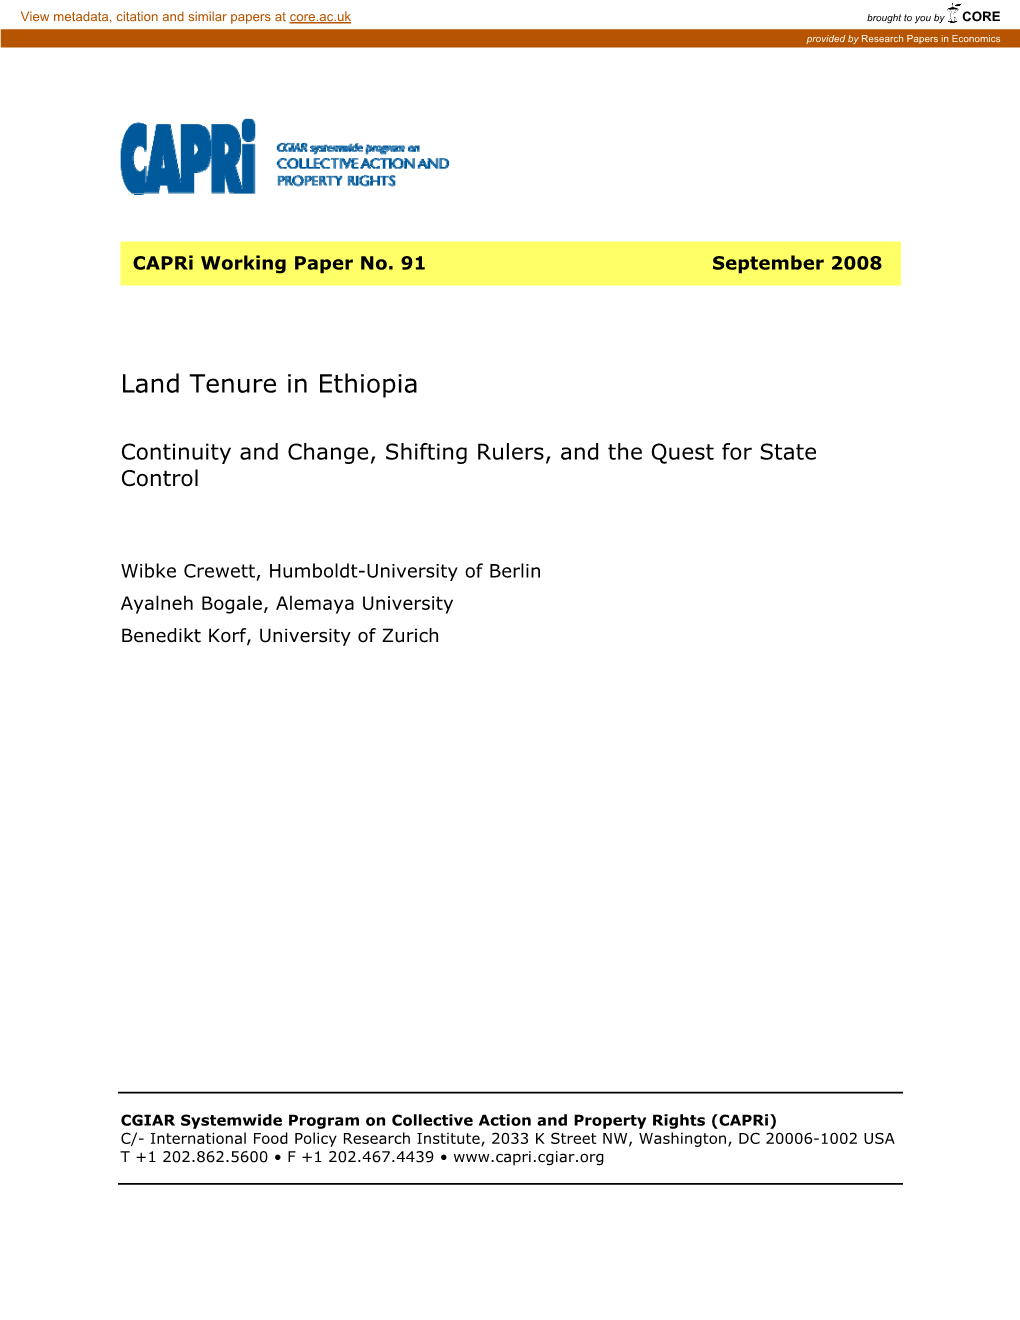 Land Tenure in Ethiopia